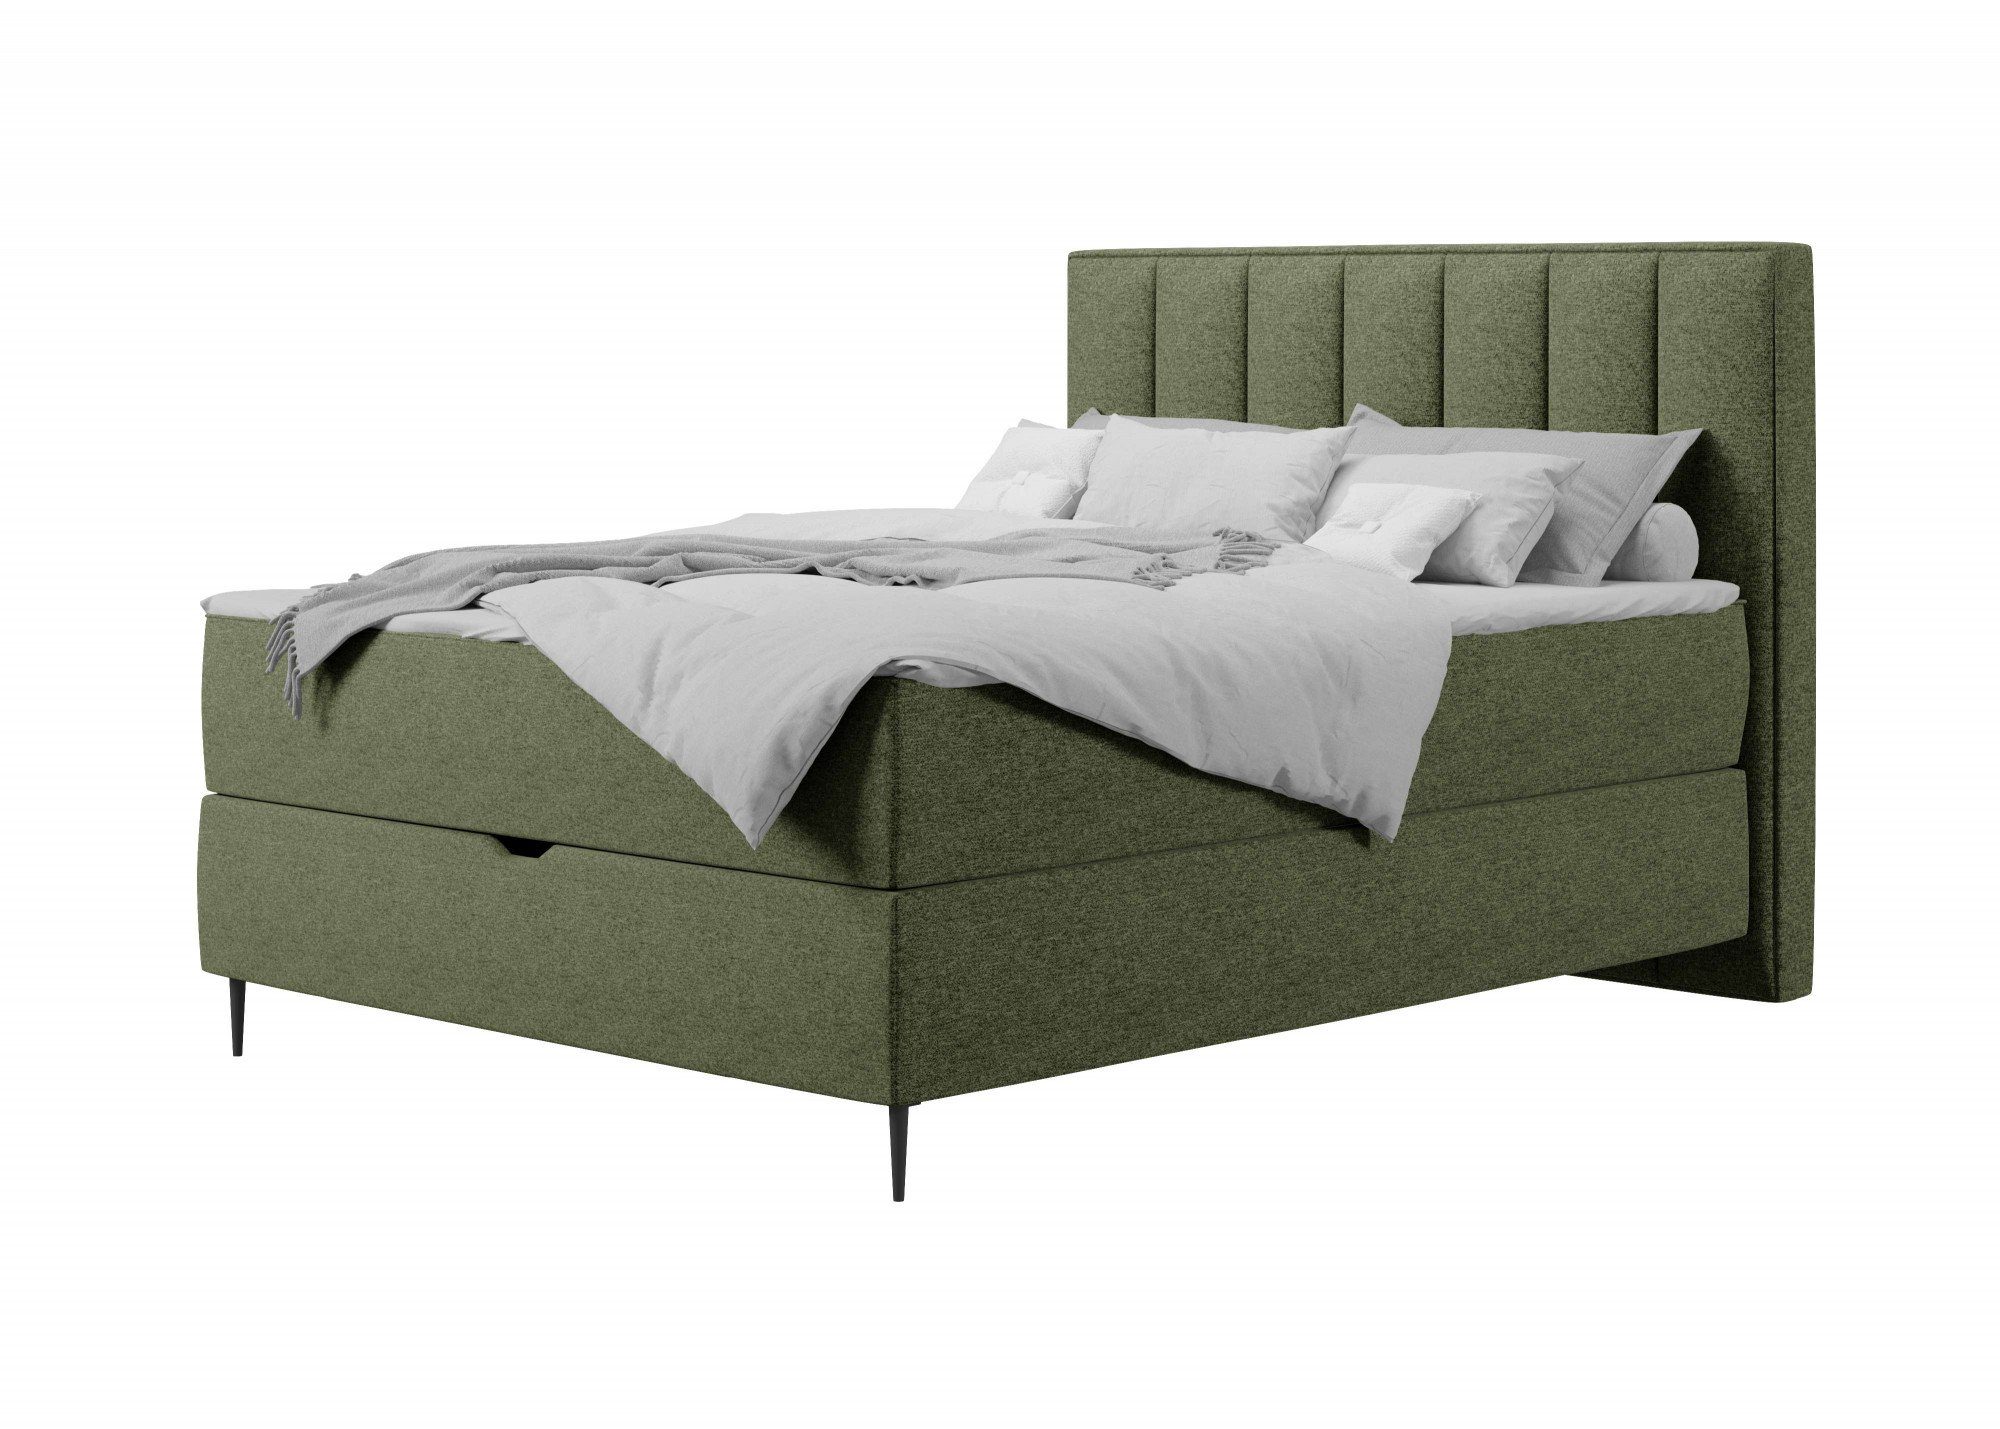 Places of Style Boxbett Rita, mit Taschen-Federkernmatratze und Bettkasten grün